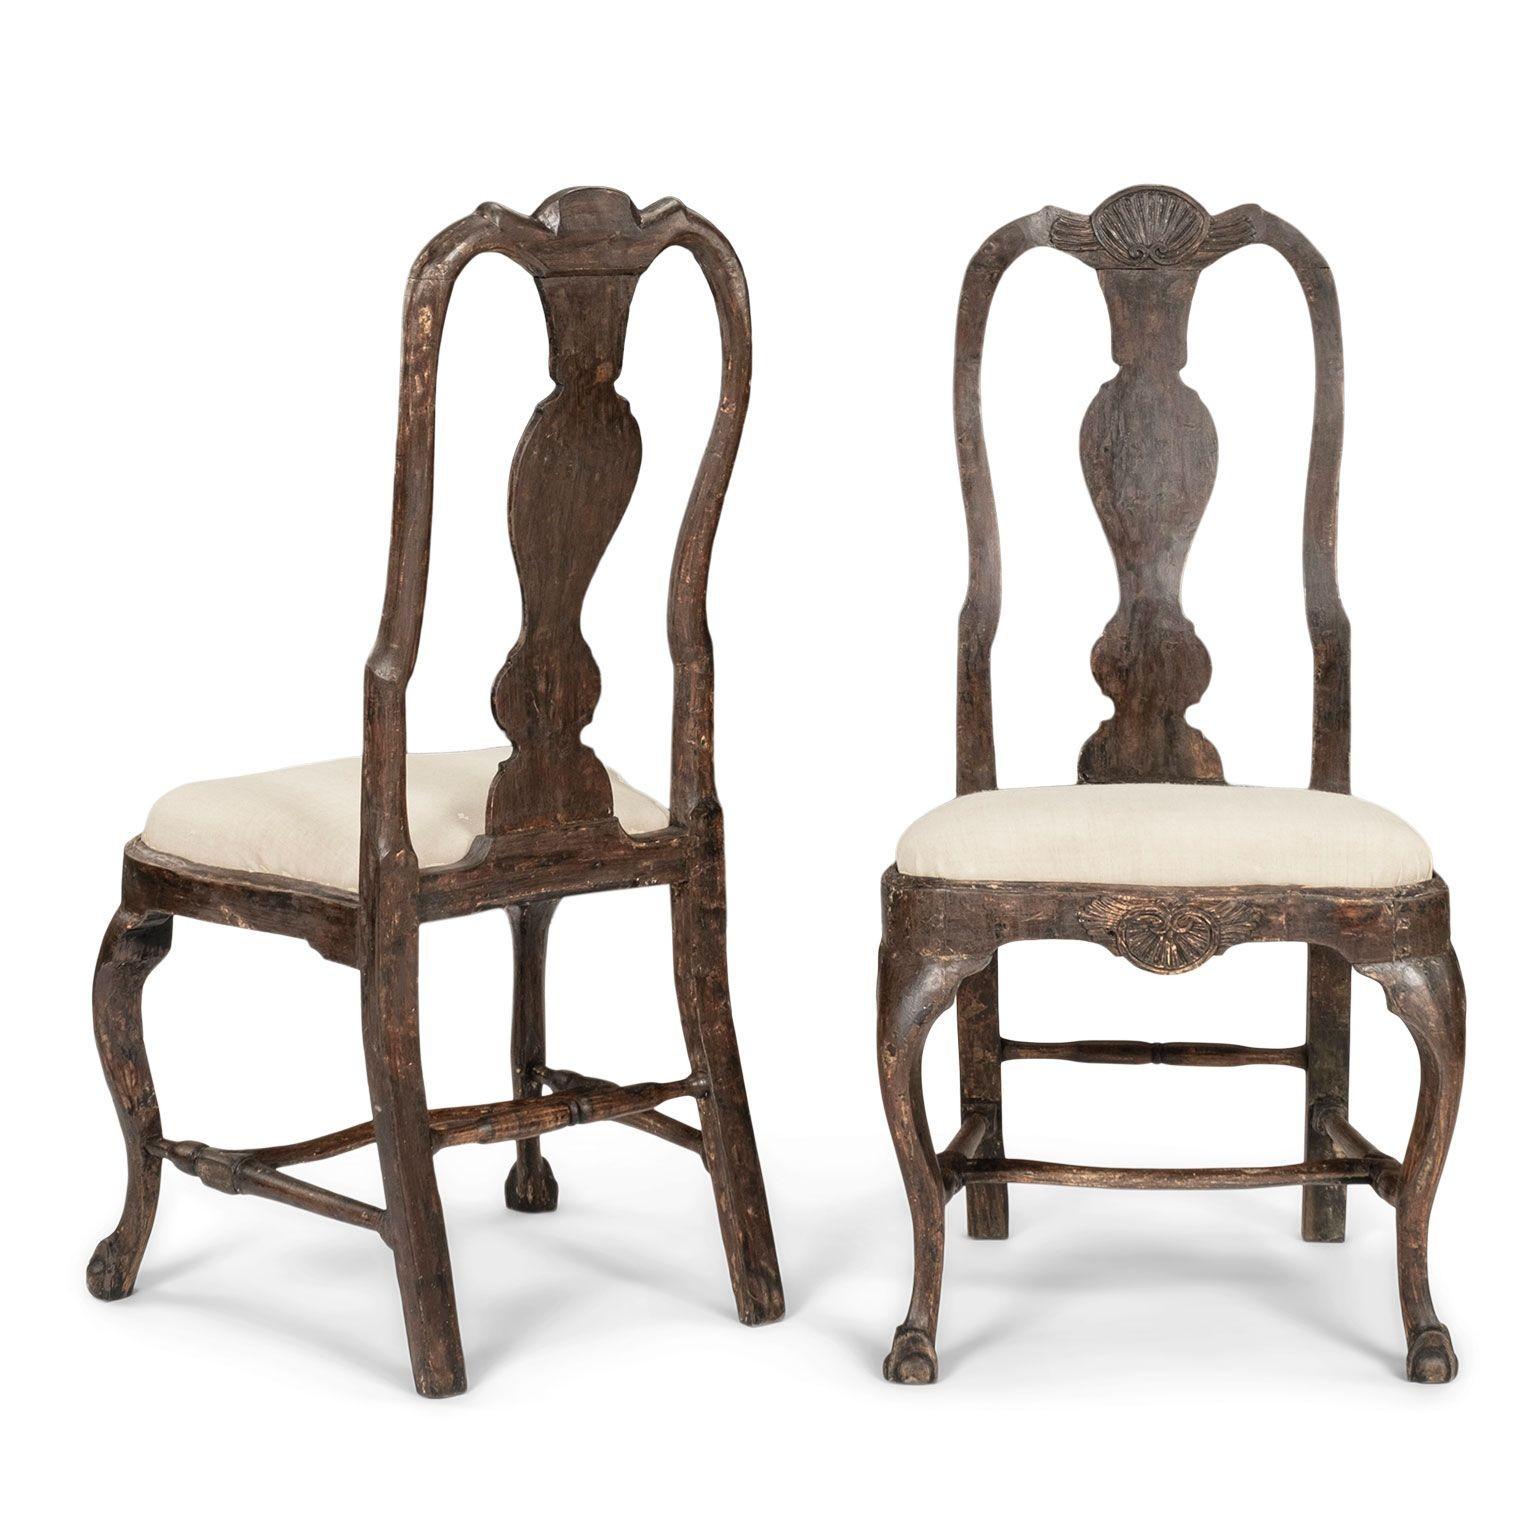 Pareja de sillas suecas de época rococó, talladas a mano hacia 1745-1774. Acabado suavemente raspado hasta las primeras capas de pintura originales. Motivo de concha tallado en el friso y la cresta. Patas delanteras cabriolé que descansan sobre pies